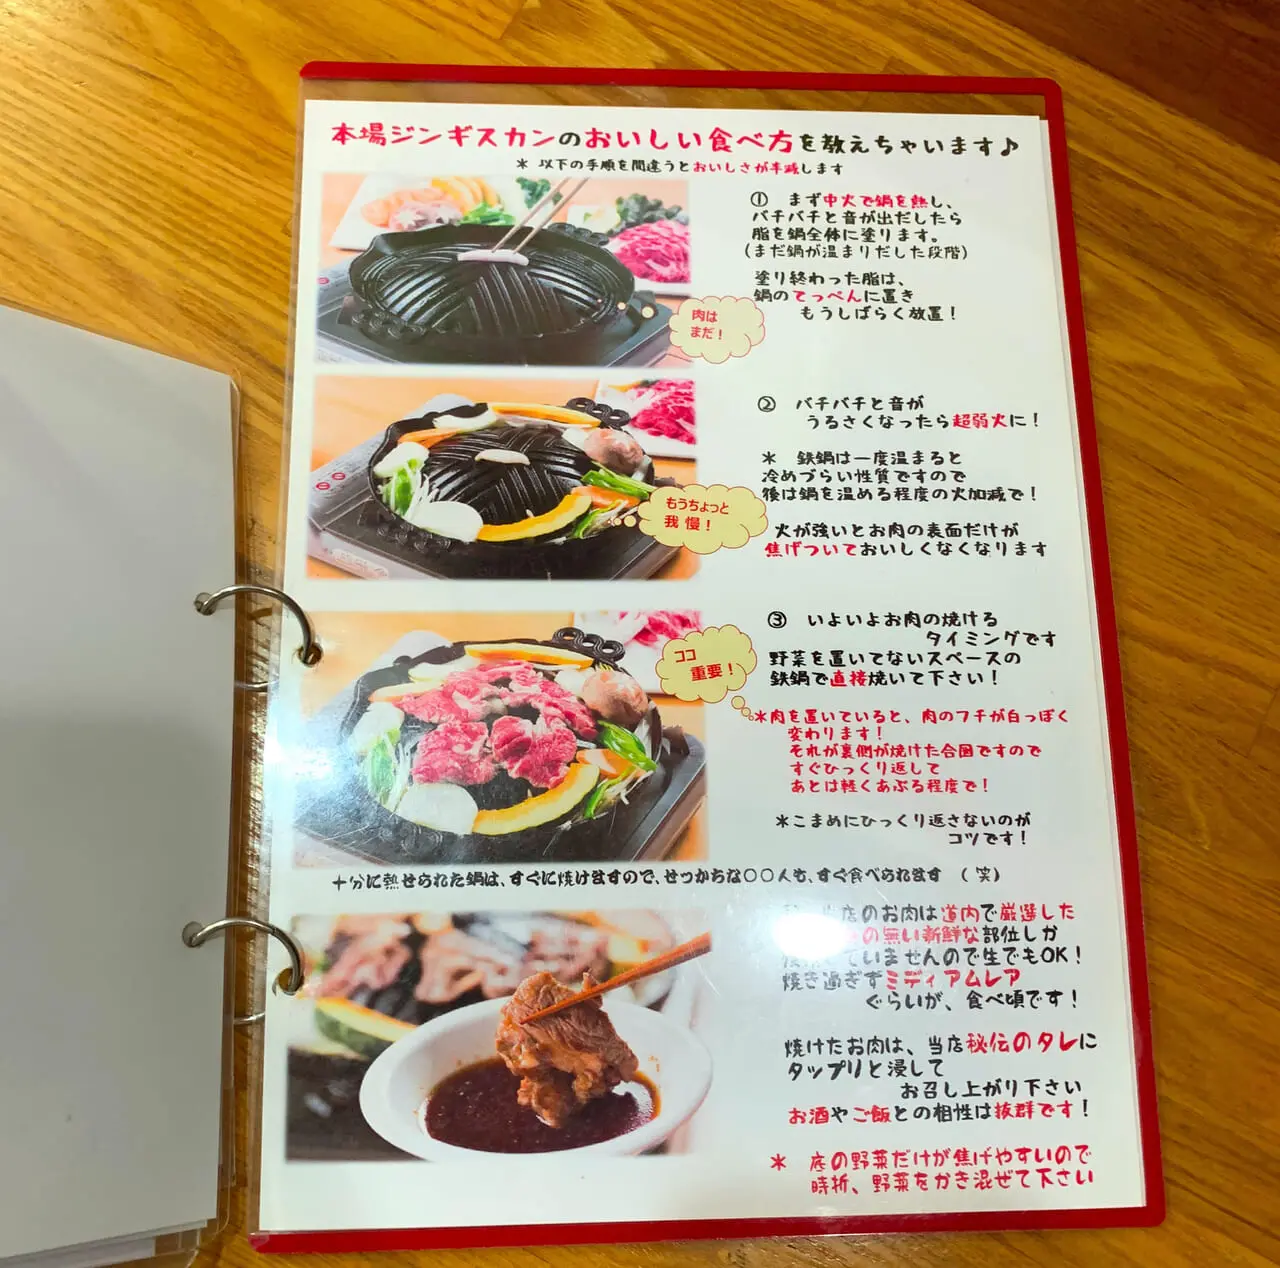 「ひつじ家」では北海道産の美味しいラム肉を堪能できます!!